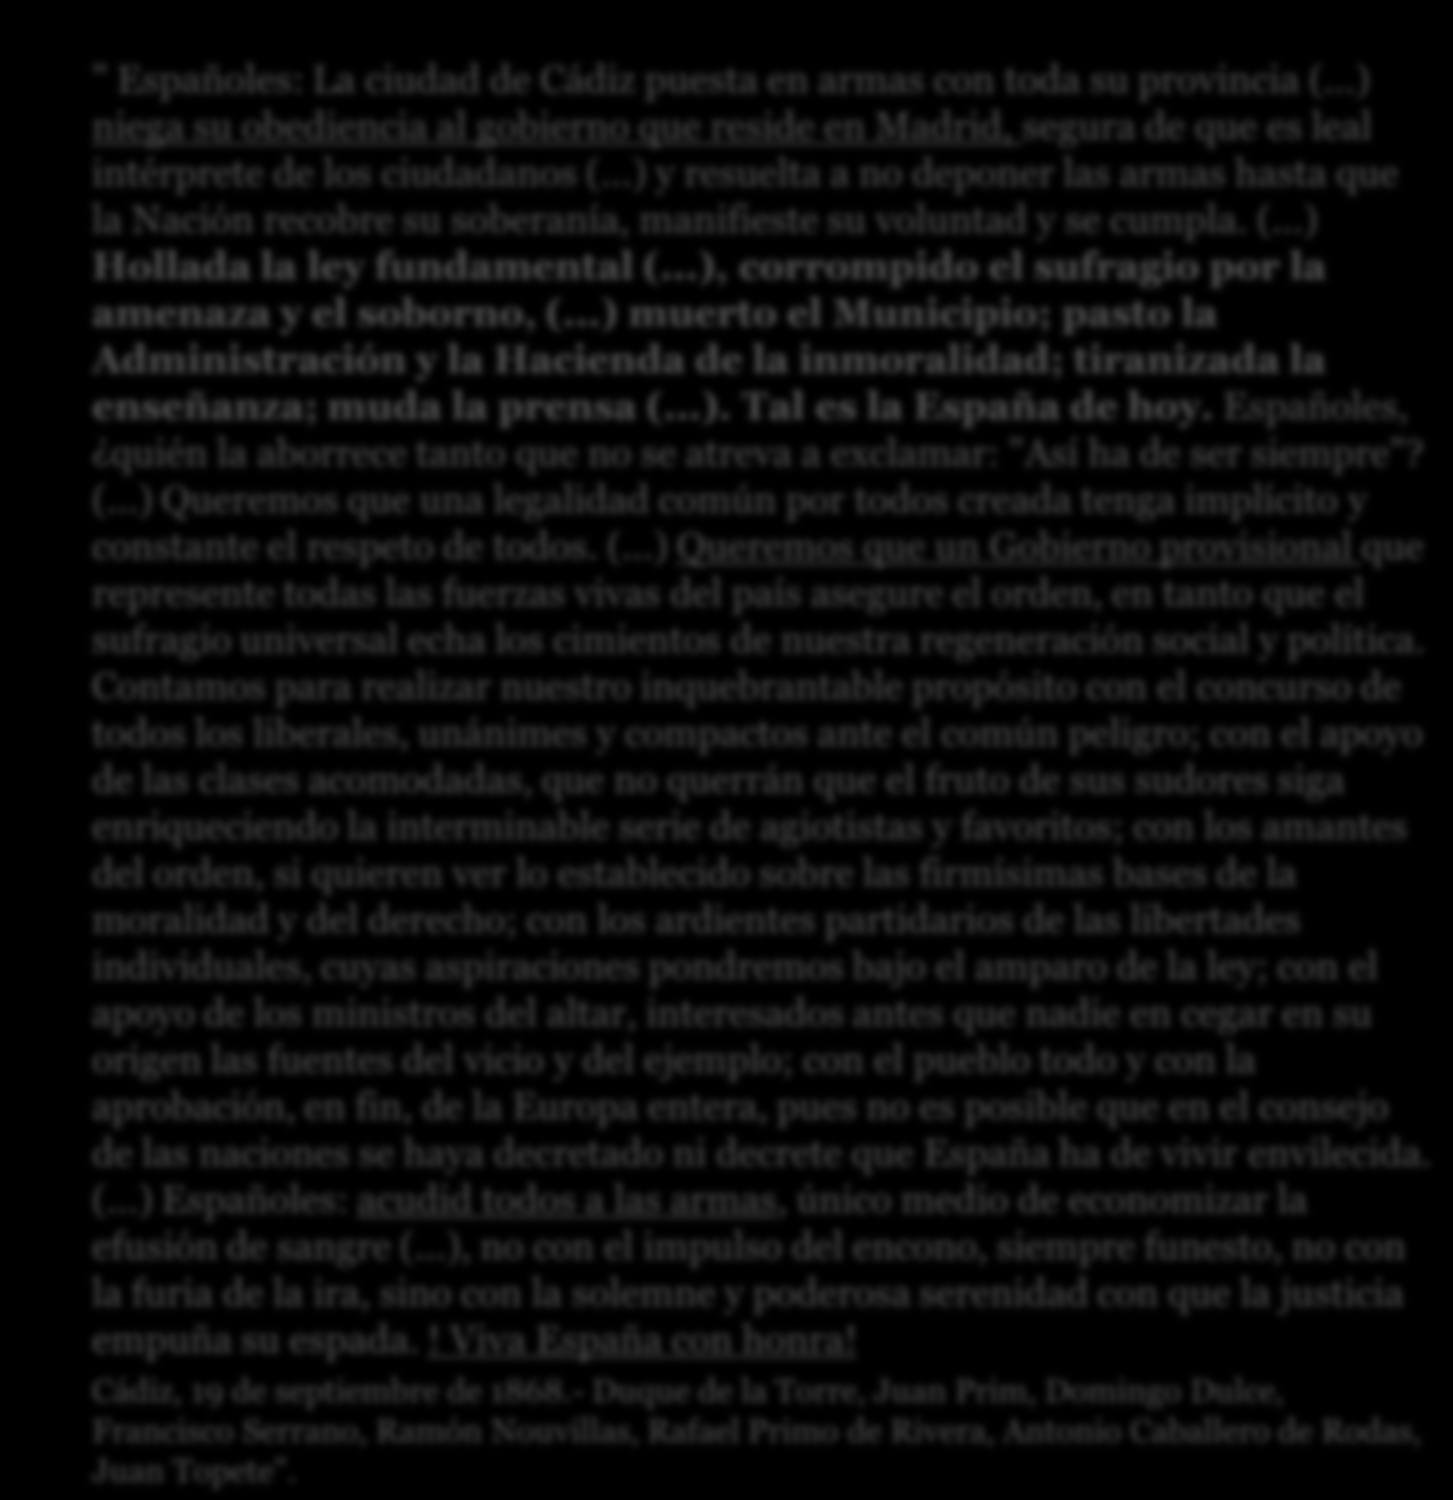 La revolución: la Gloriosa Septiembre de 1868 Protagonistas: Topete, Prim y Serrano 2.